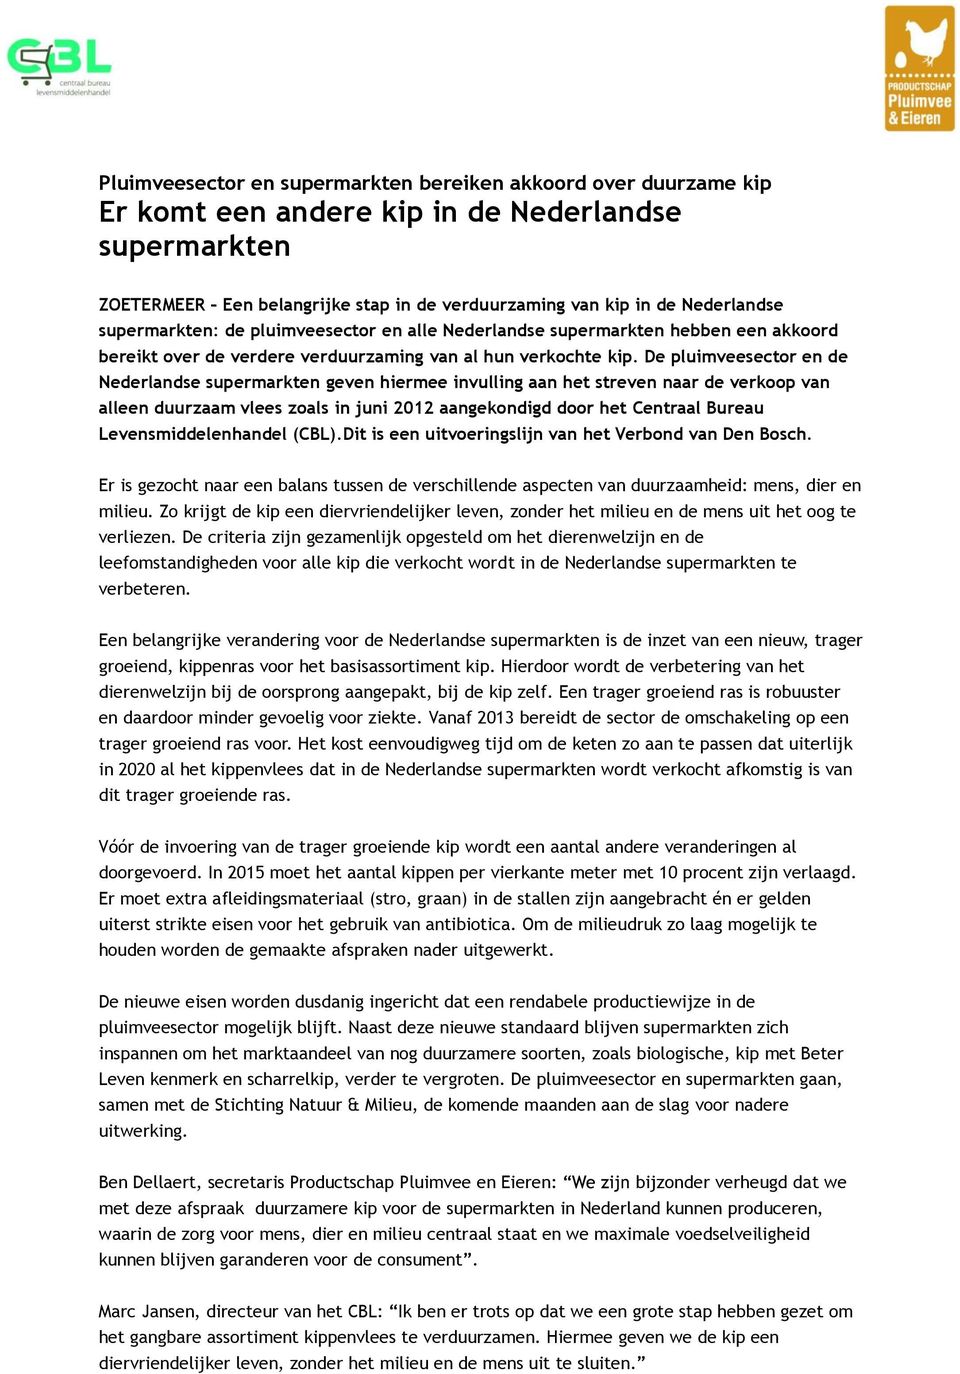 De pluimveesector en de Nederlandse supermarkten geven hiermee invulling aan het streven naar de verkoop van alleen duurzaam vlees zoals in juni 2012 aangekondigd door het Centraal Bureau